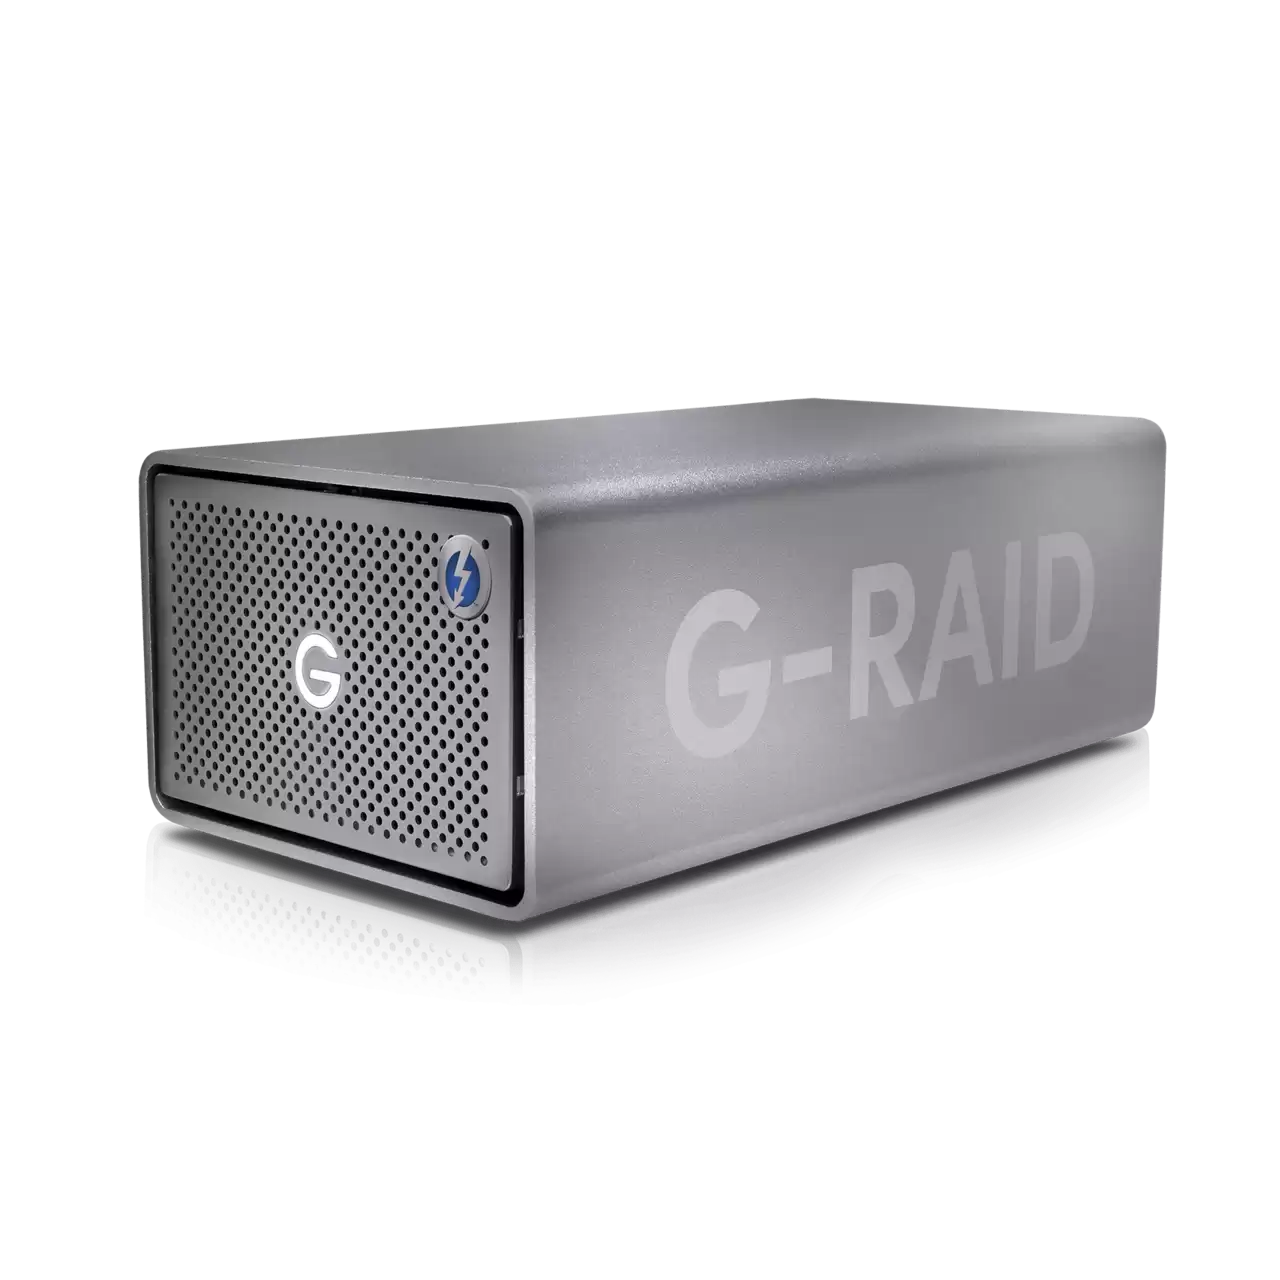 G-RAID 2 40TB 